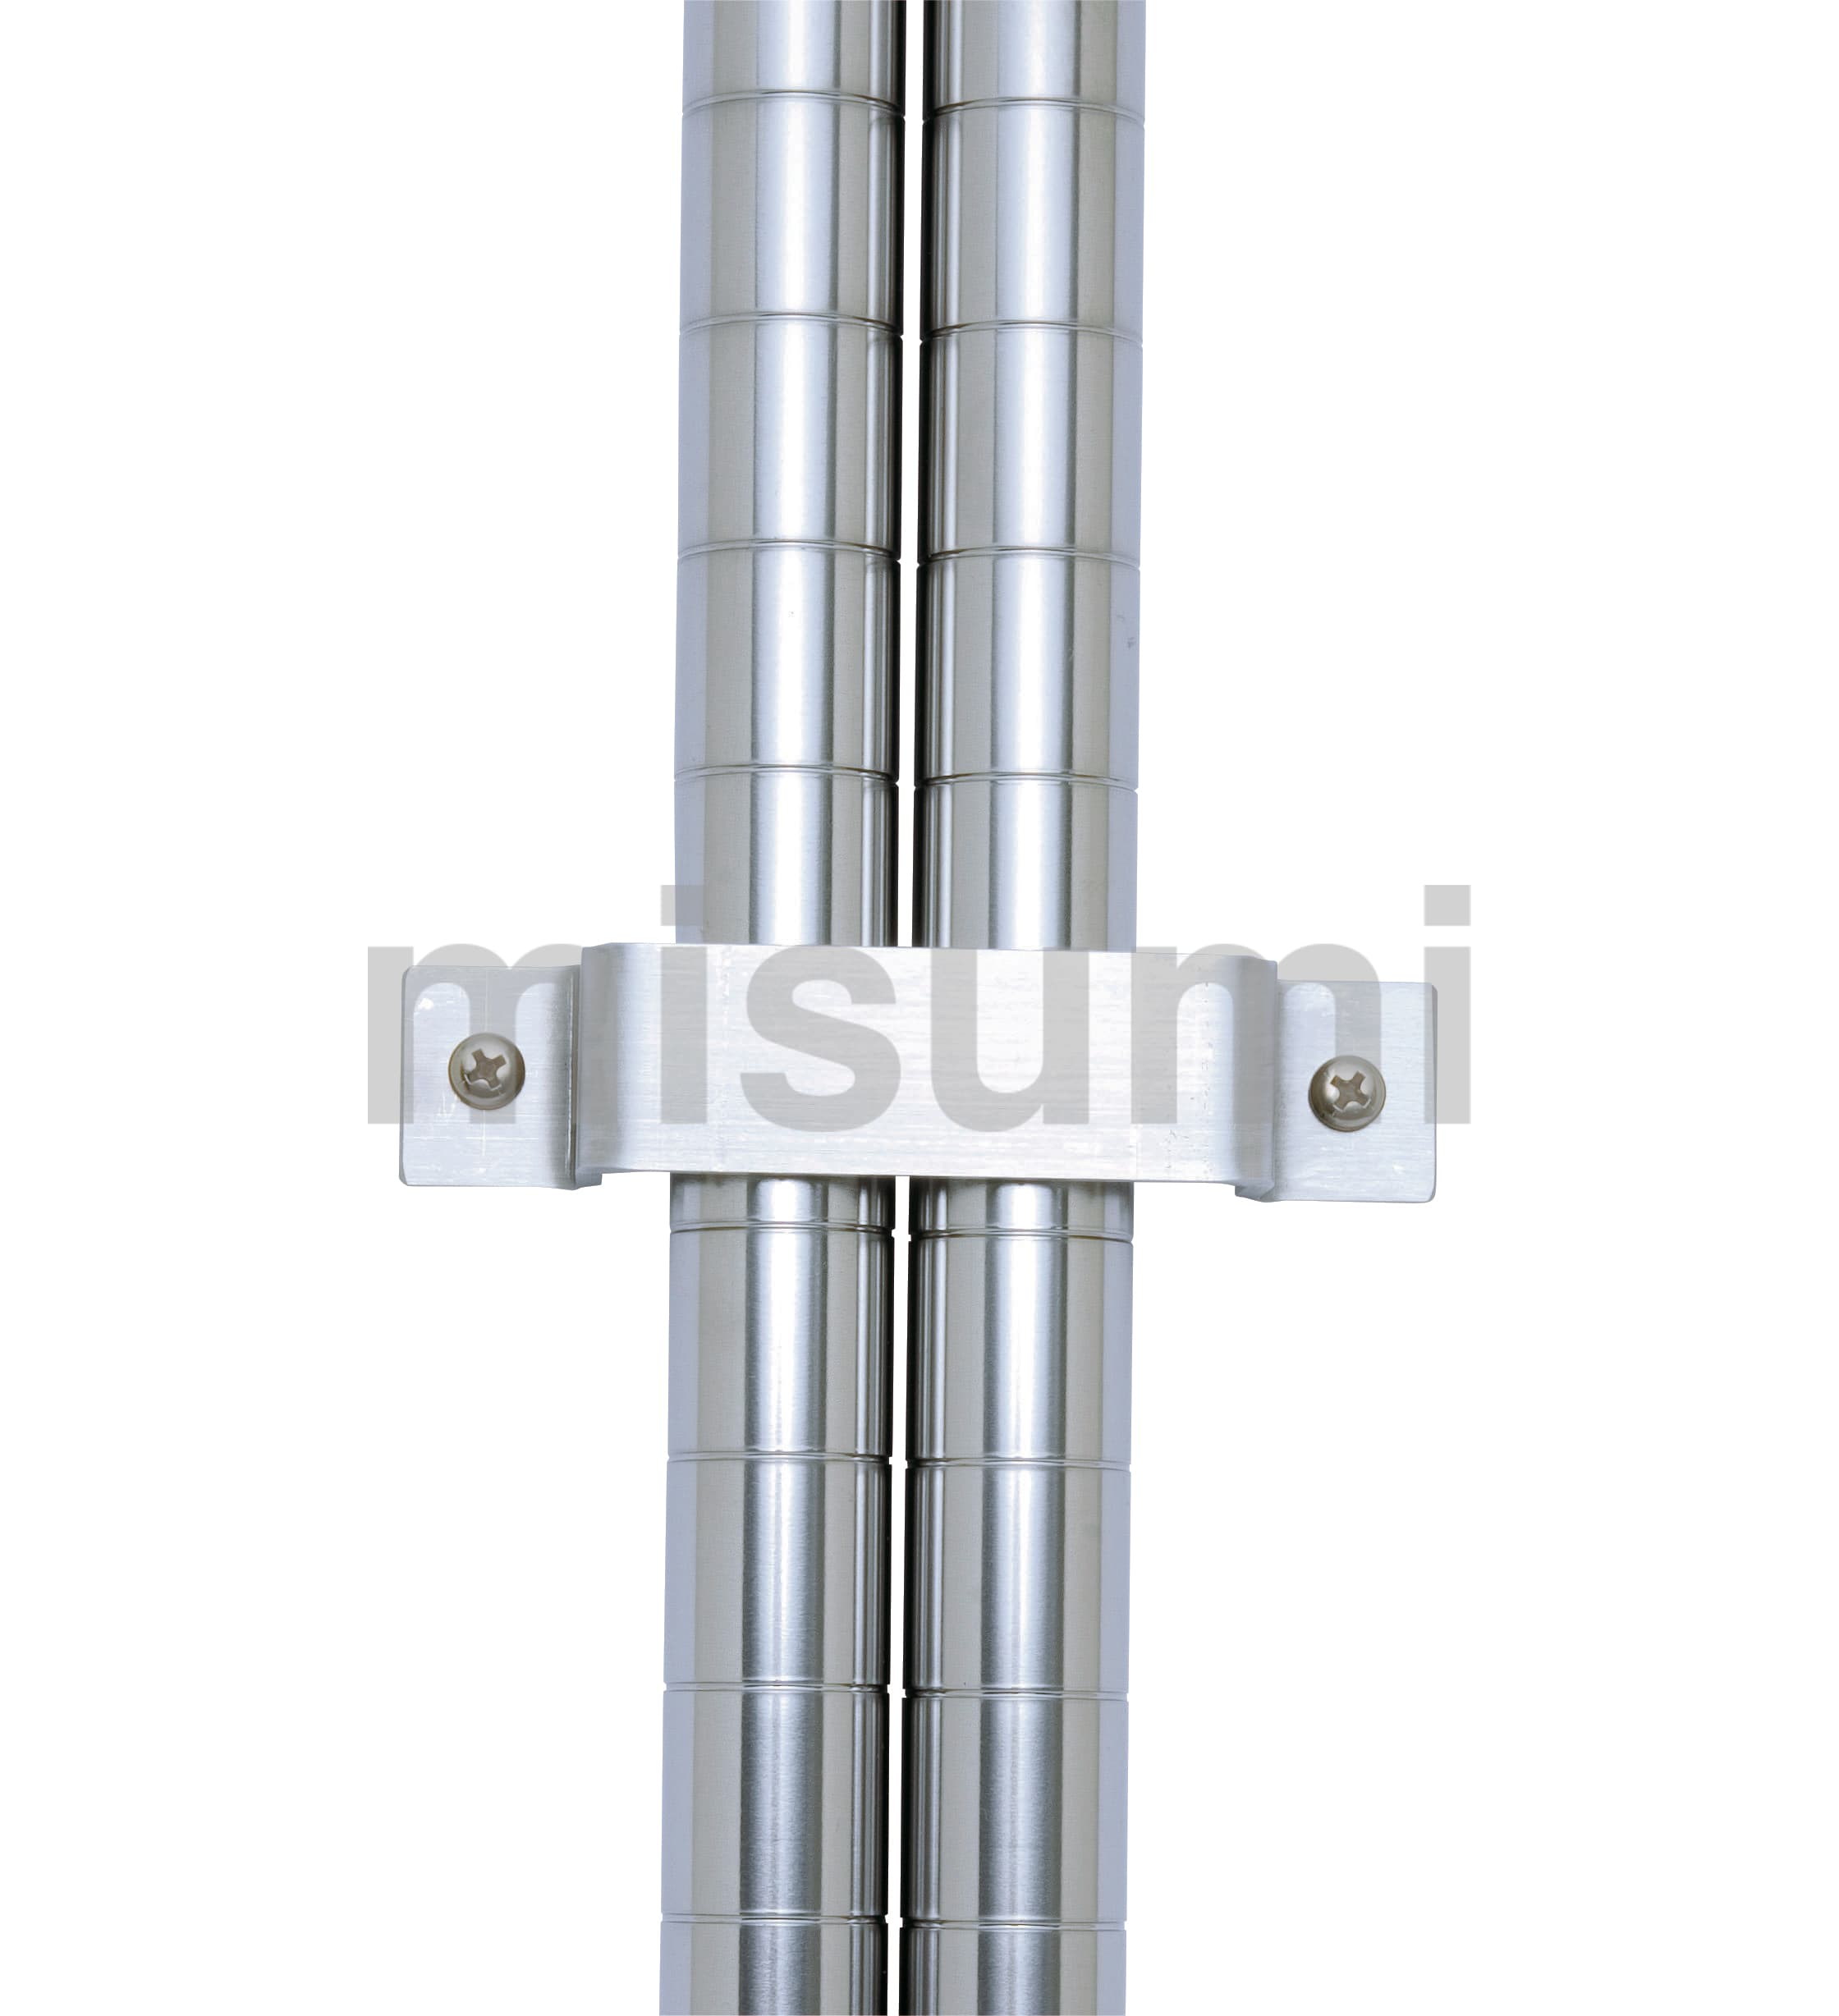 キャニオンシェルフ用オプションパーツ 耐震用壁面固定金具 キャニオン MISUMI(ミスミ)